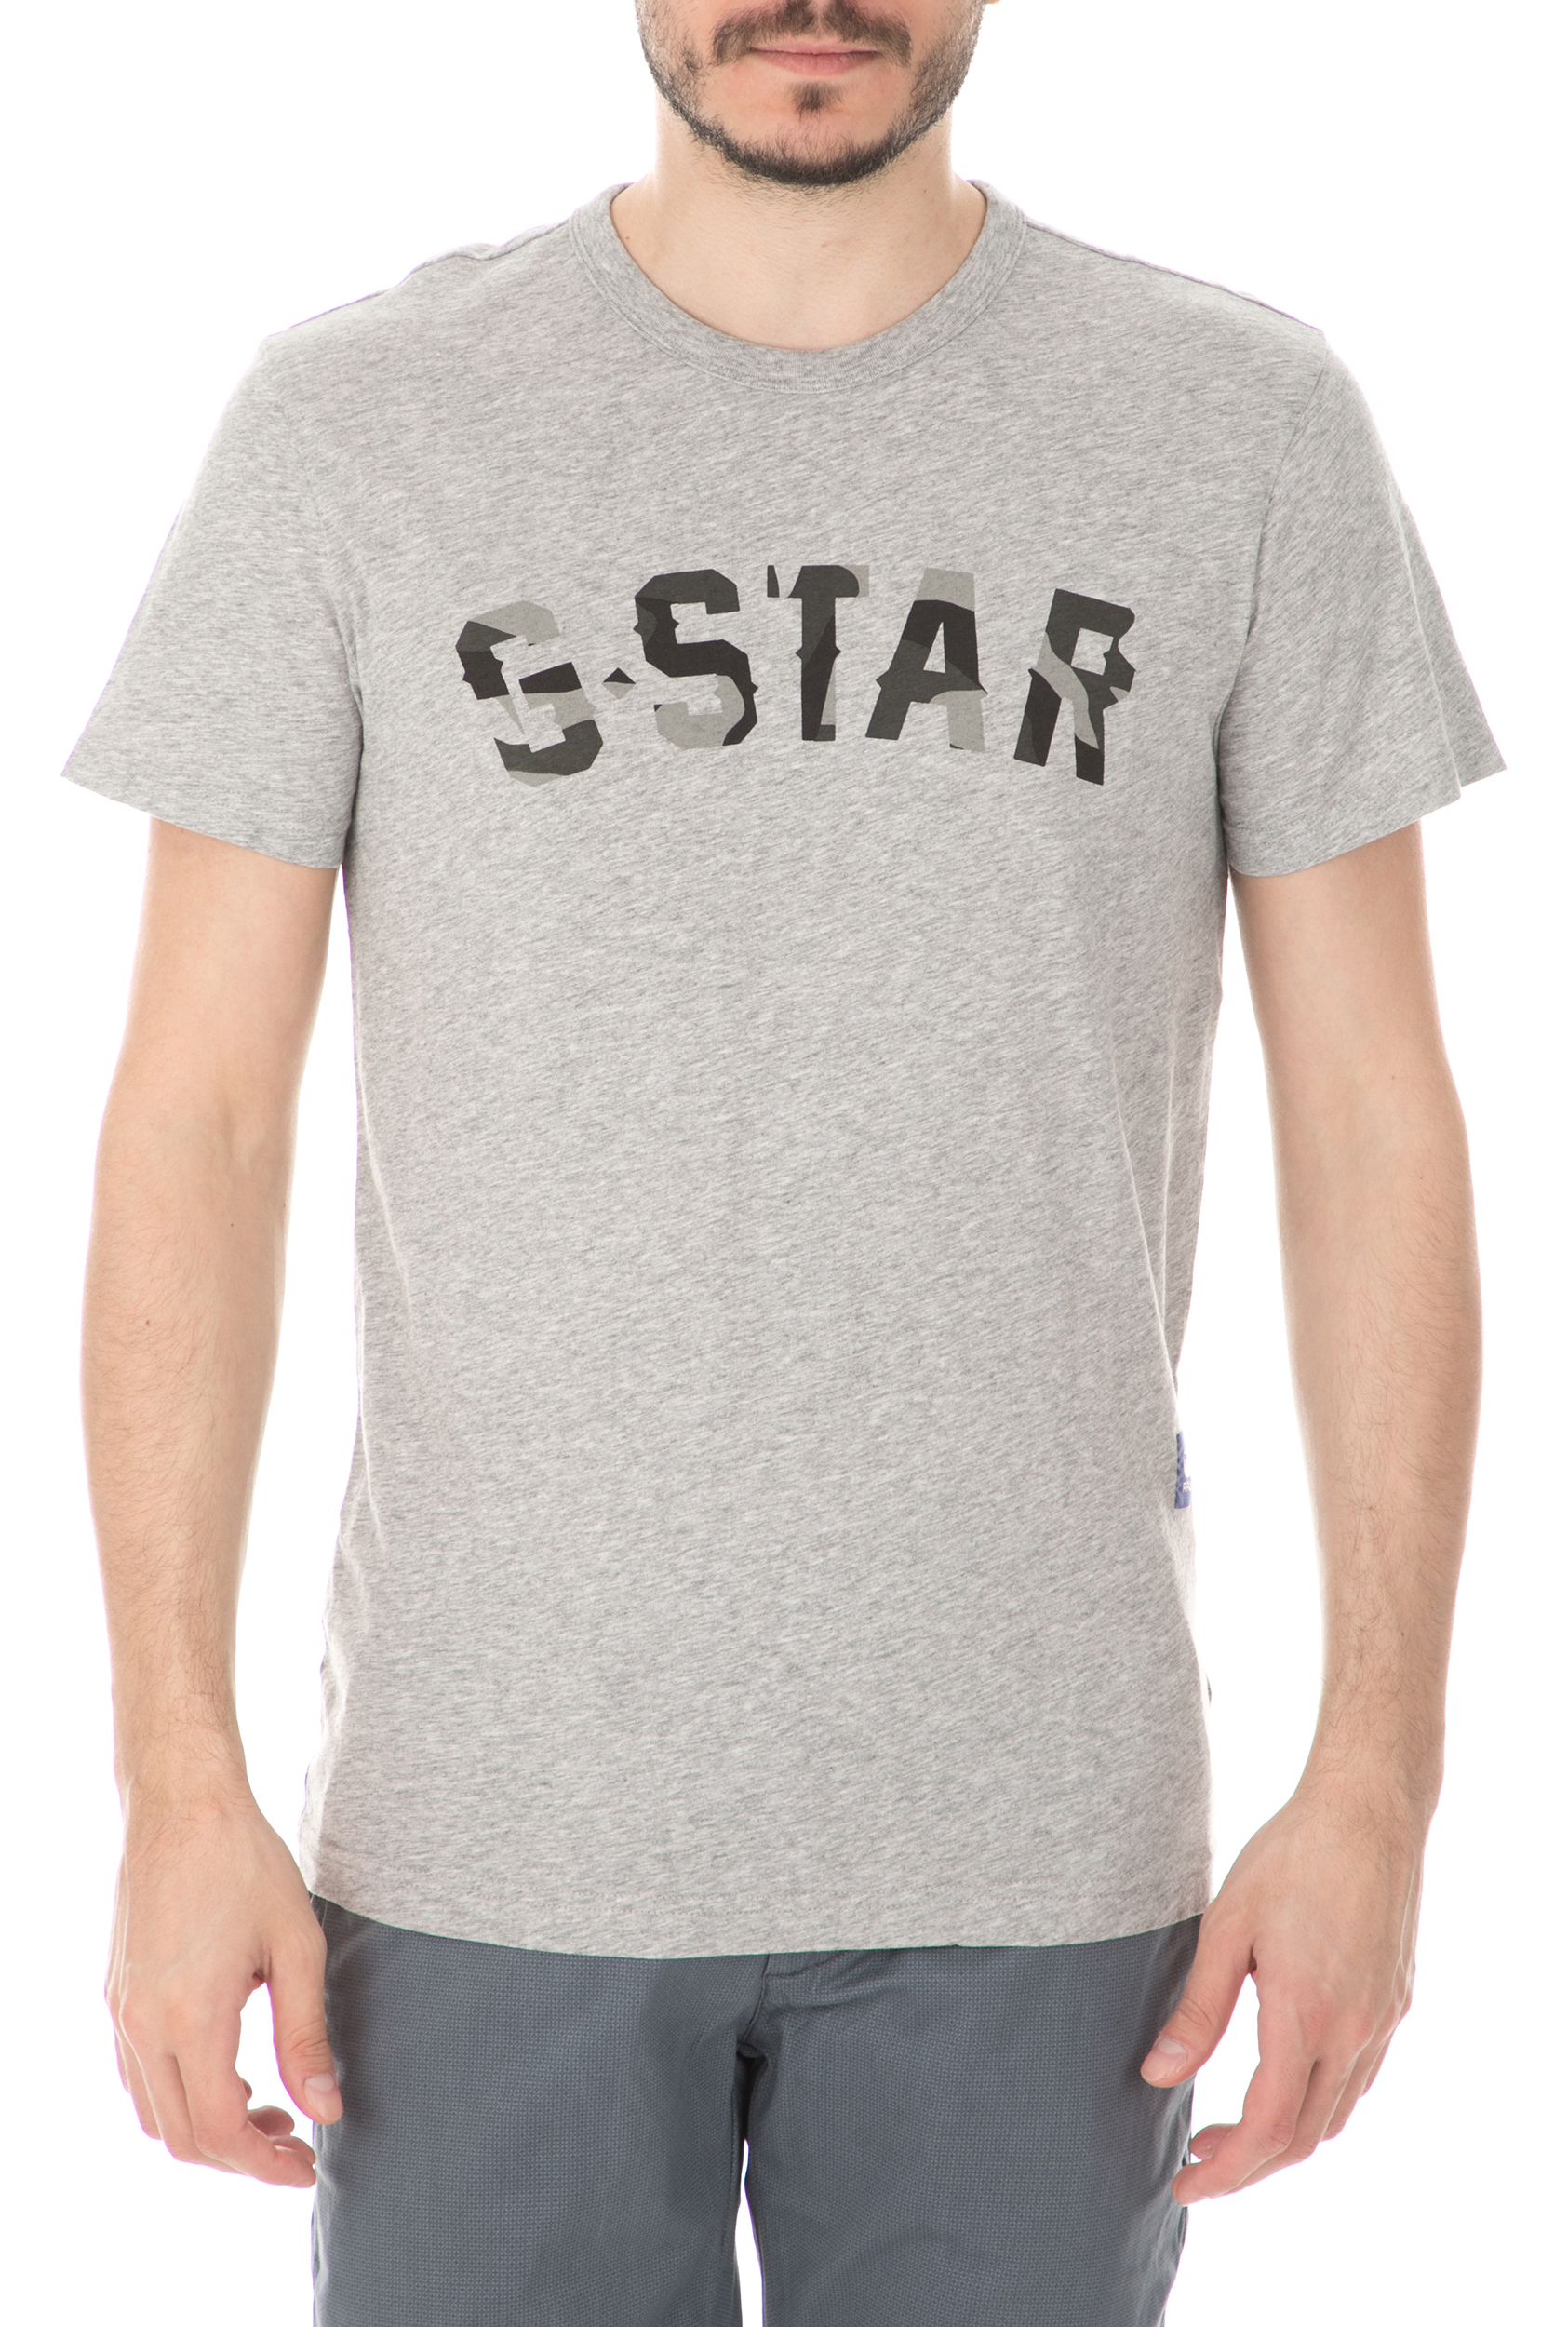 Ανδρικά/Ρούχα/Μπλούζες/Κοντομάνικες G-STAR - Ανδρική κοντομάνικη μπλούζα G-STAR RAW γκρι